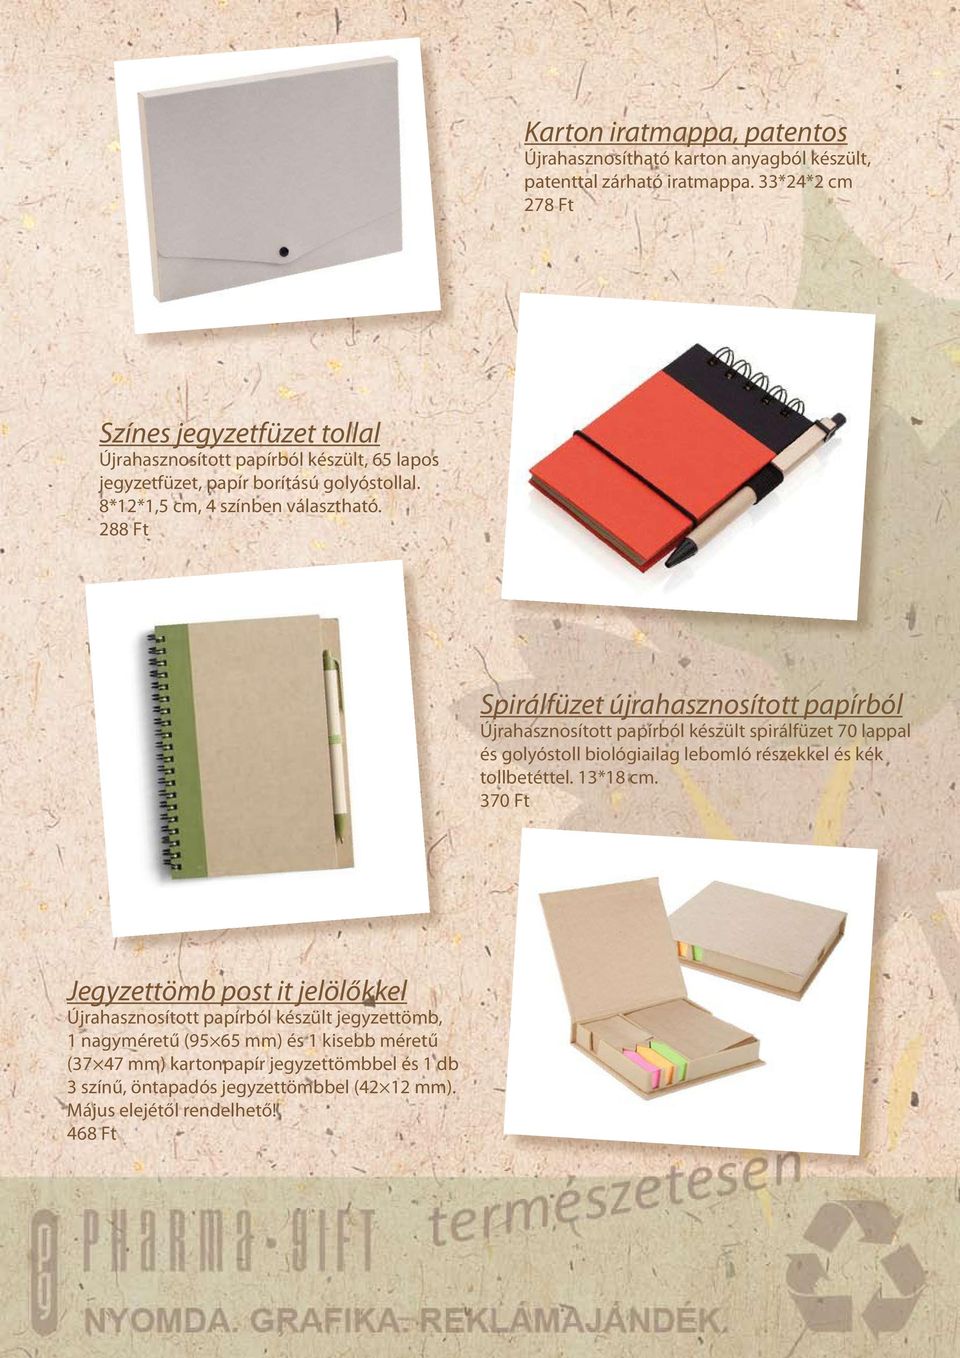 Öko zsebtükör Zsebtükör, újrahasznosított papírból készült borítással és  mágneses zárral. 10*5,5*0,5 cm, május elejétől rendelhető! - PDF Ingyenes  letöltés